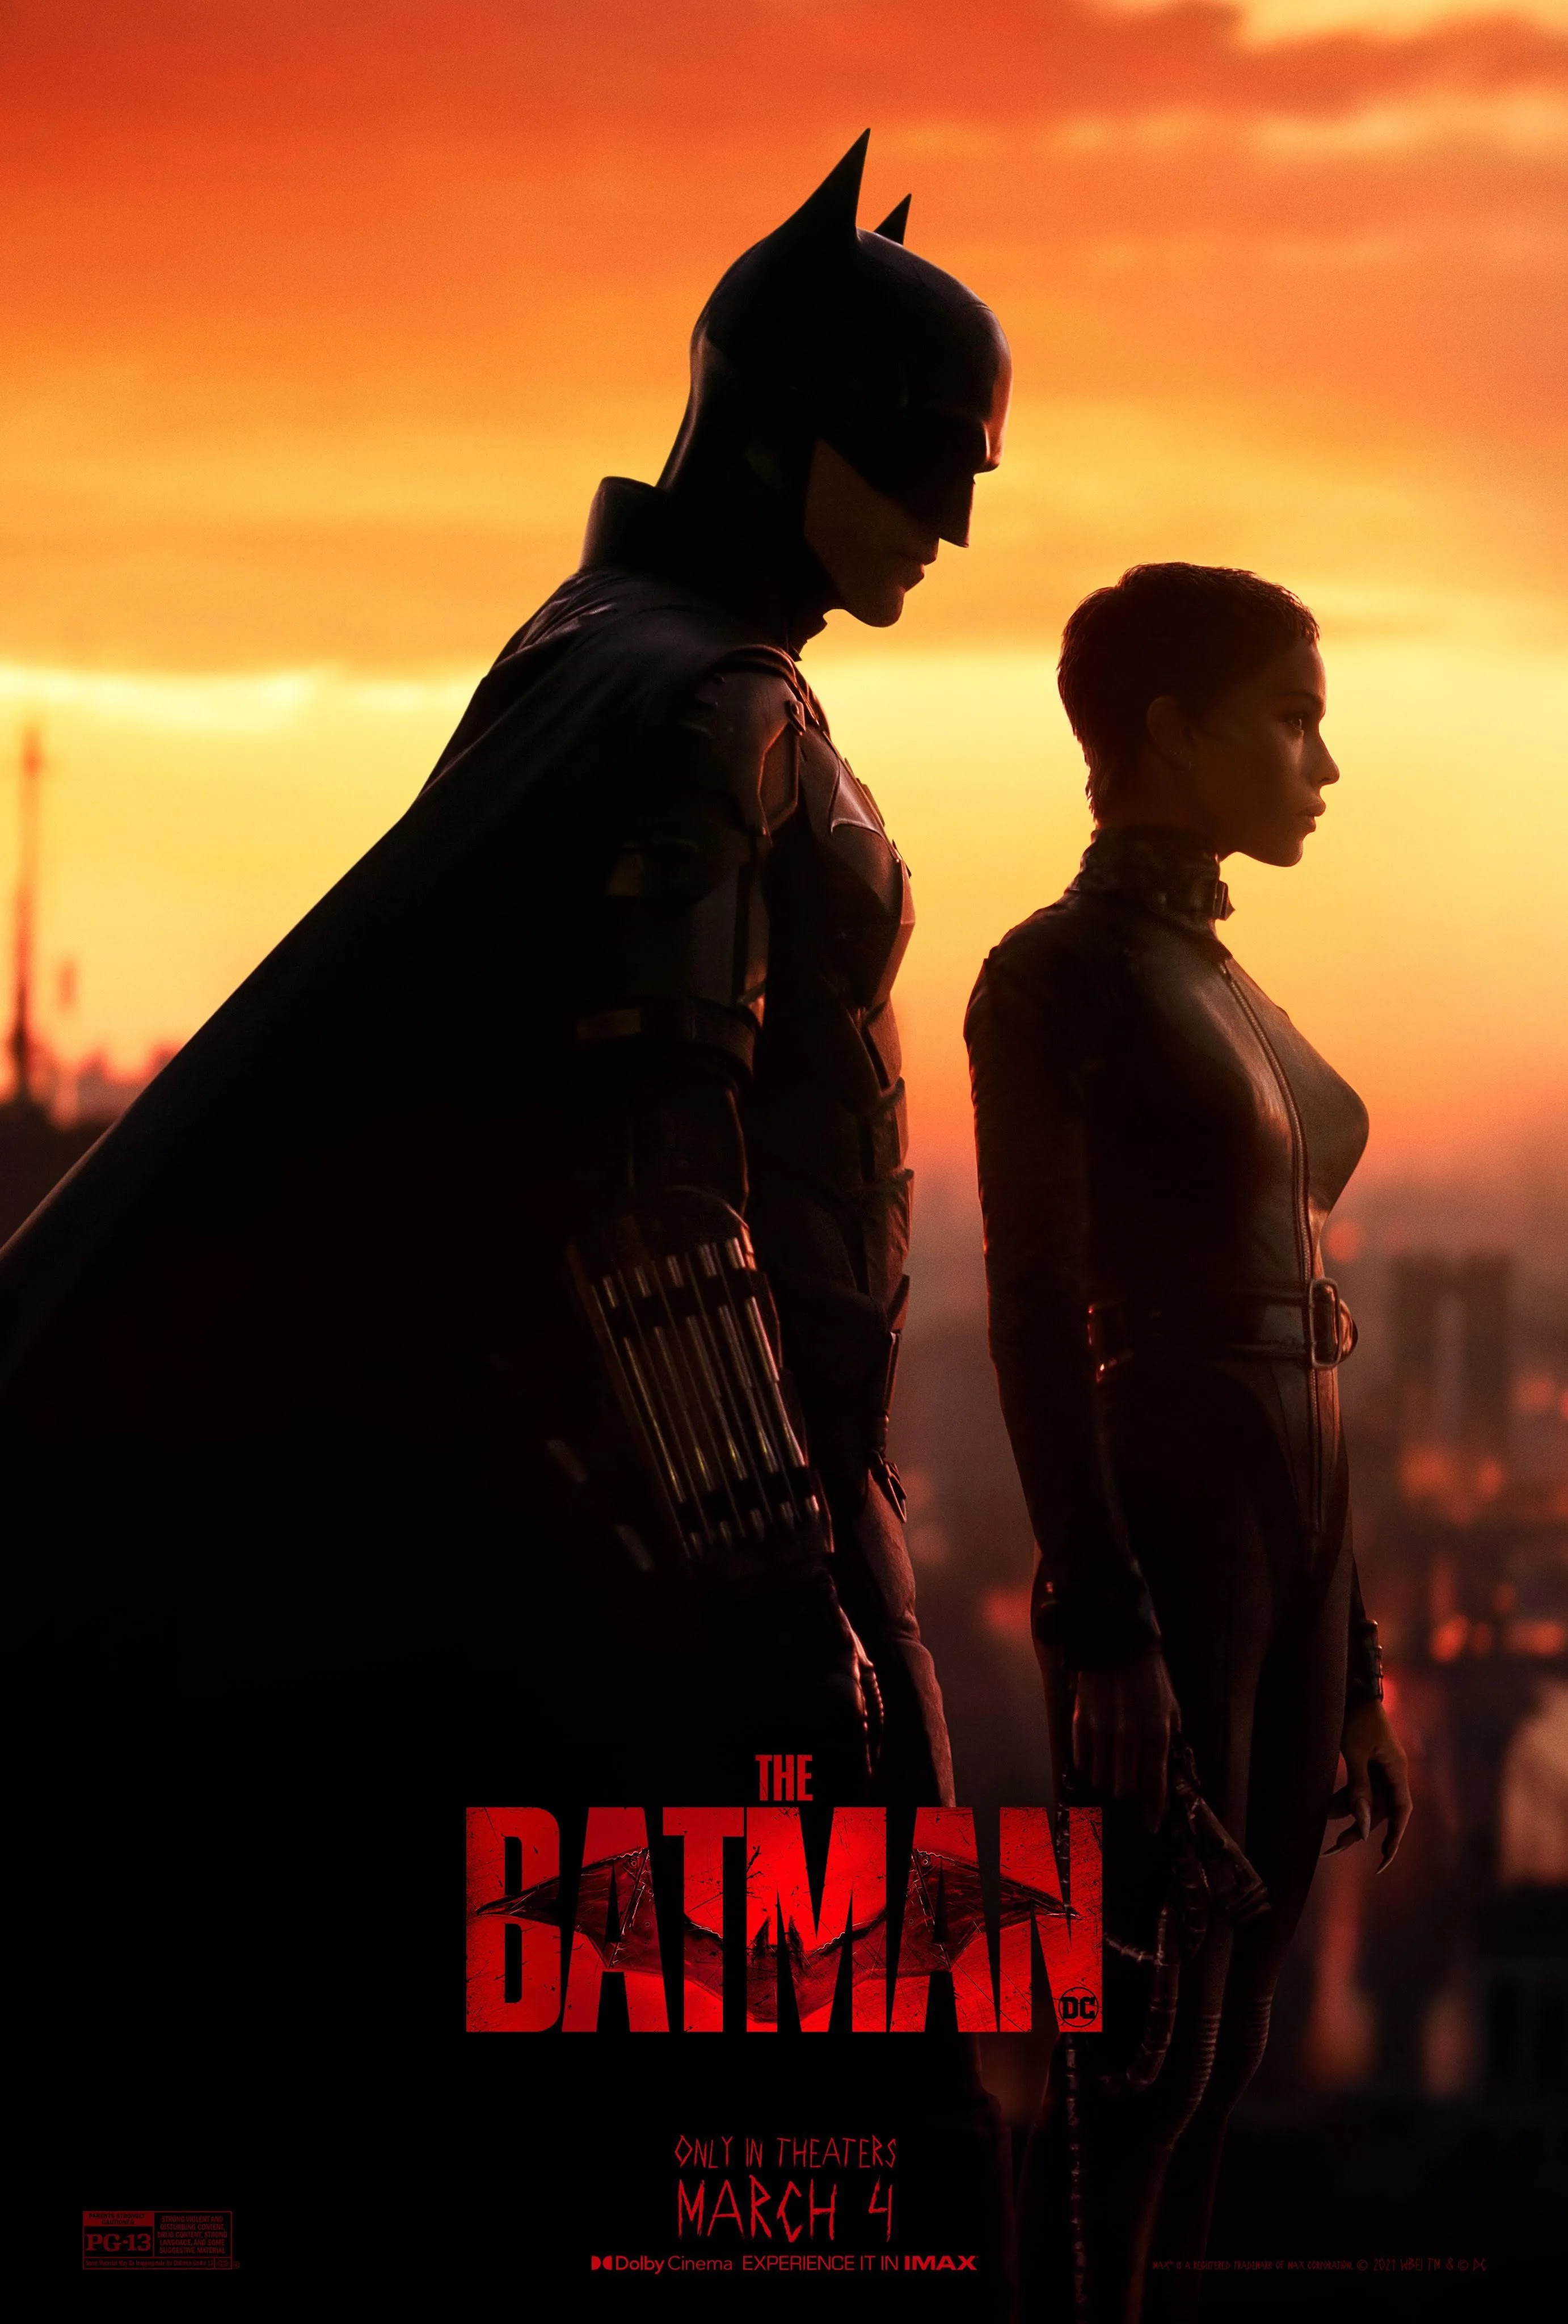 The CarrCom Blog: Movie Review - The Batman